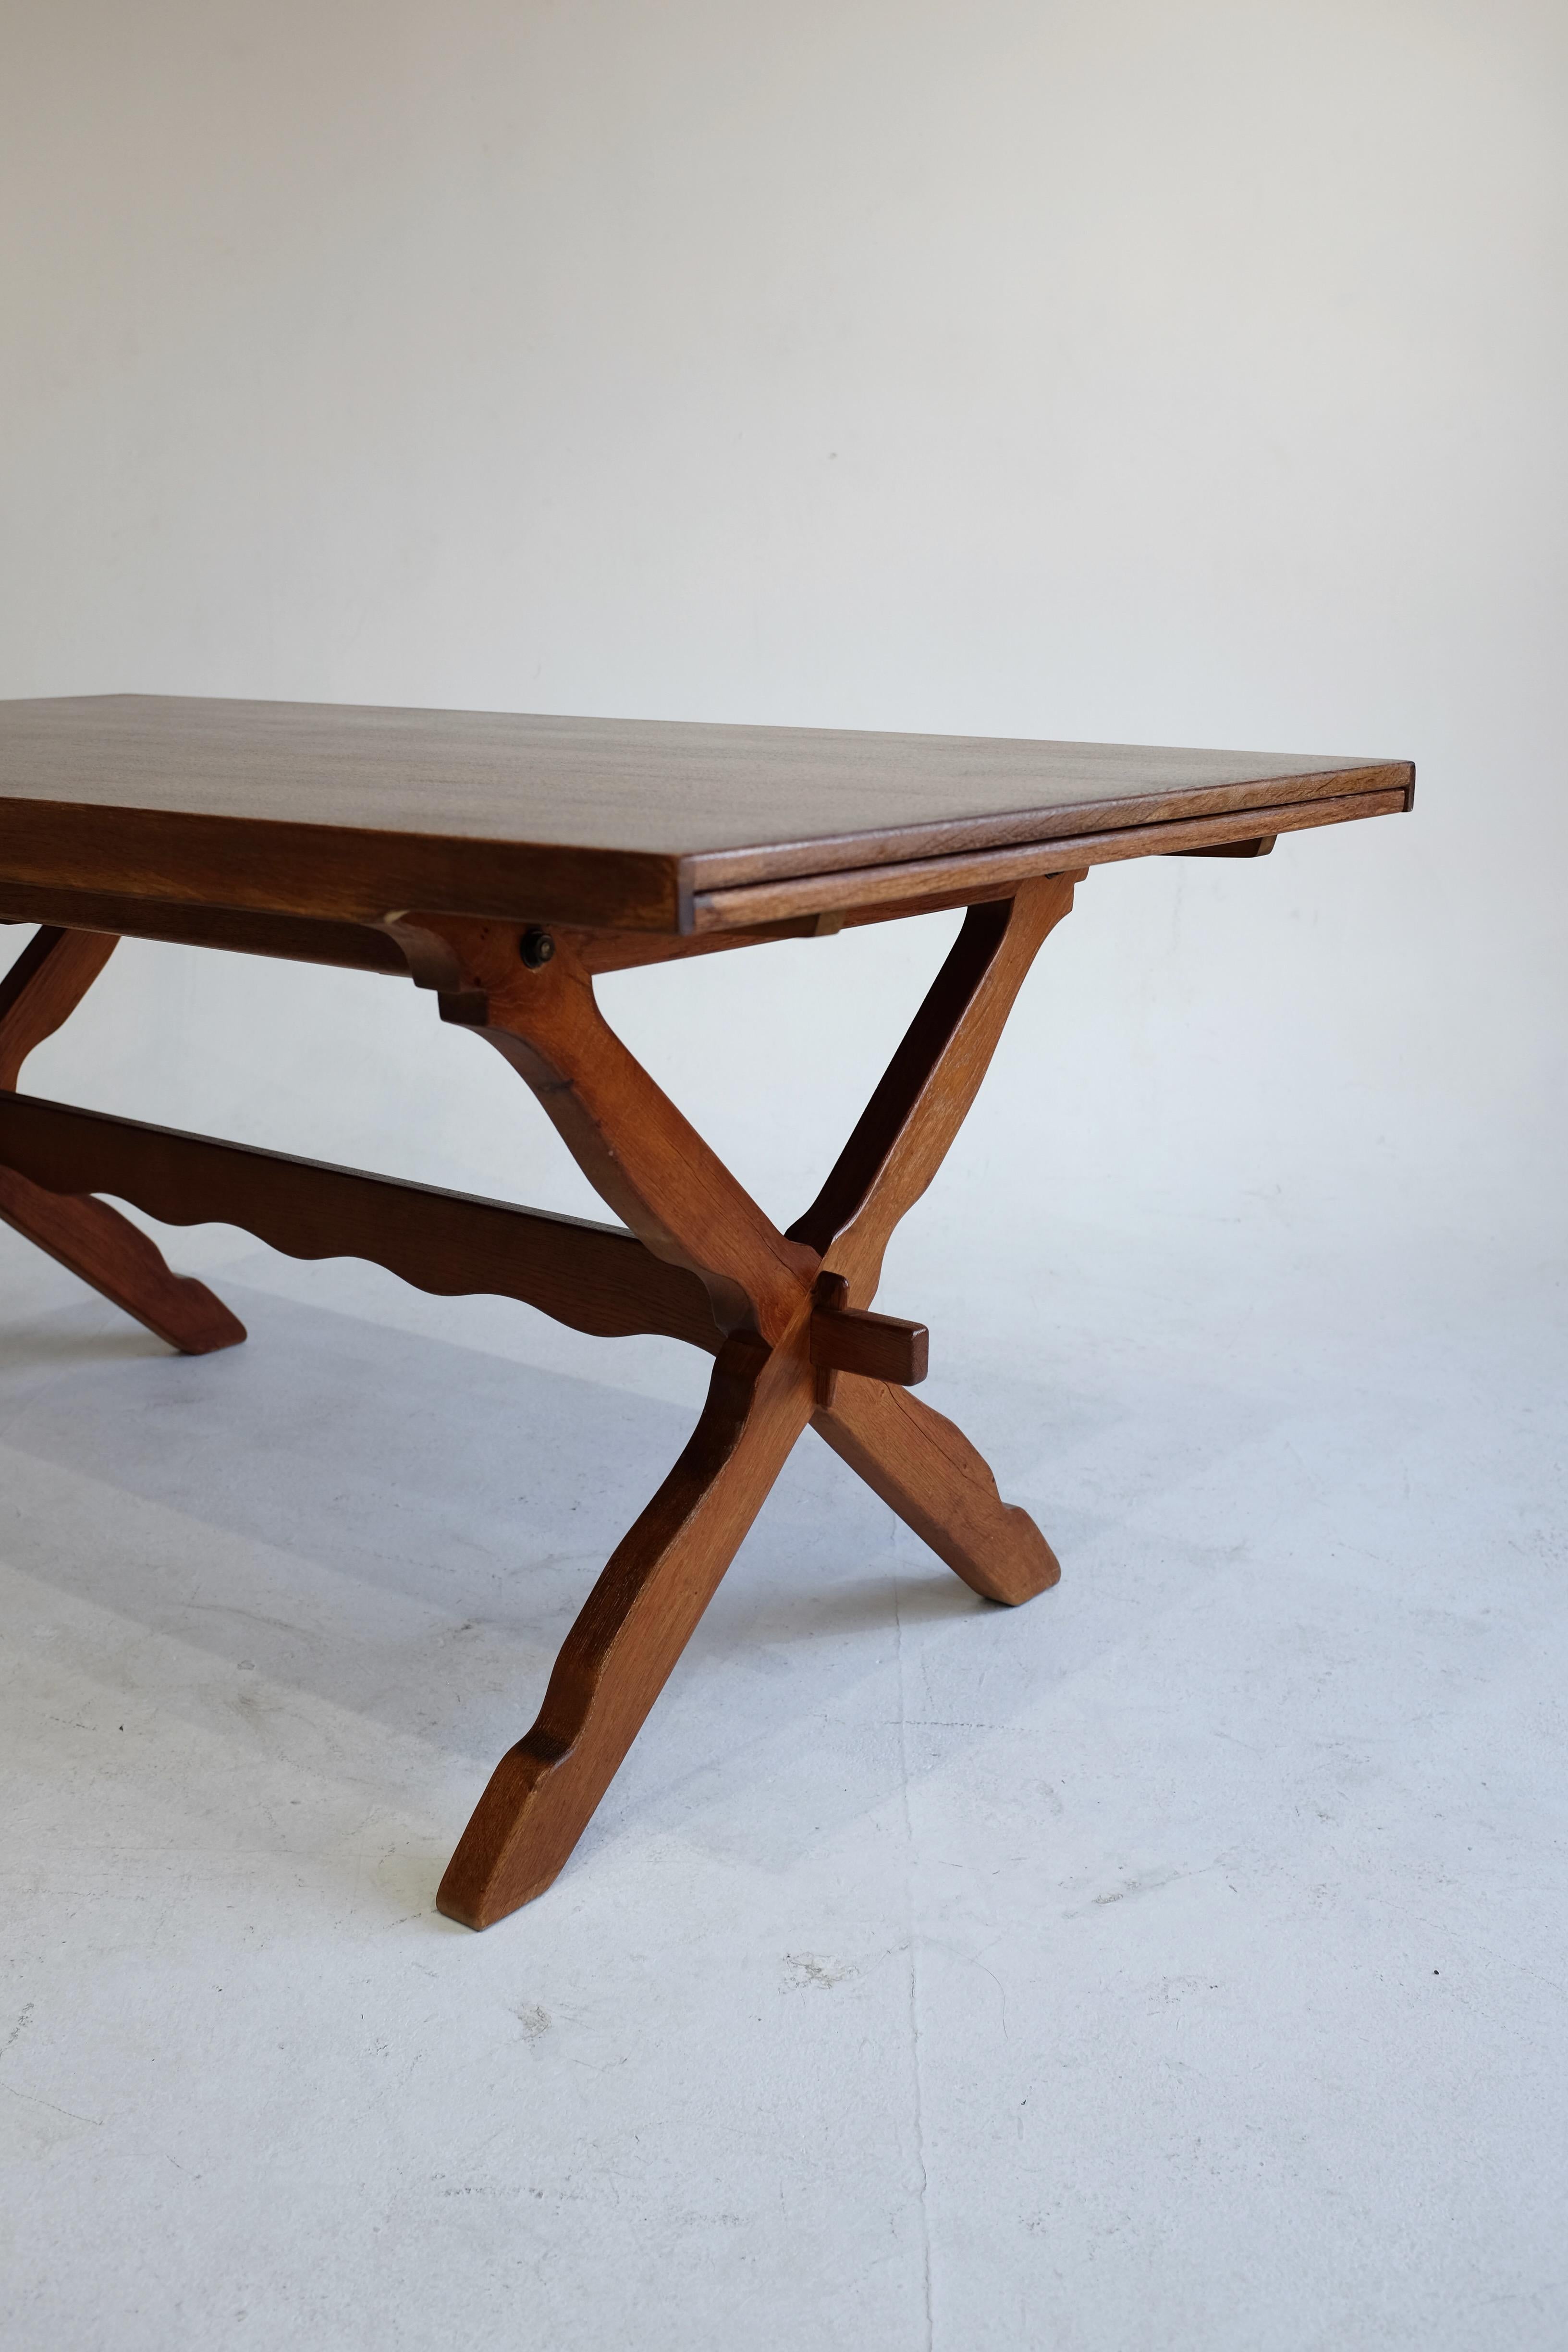 Magnifique table à manger danoise moderne sculptée par Henning Kjærnulf dans un style rustique typique de ses créations. La table se compose de deux jambes croisées aux extrémités avec un design sculpté de vagues et deux extensions de feuilles pour